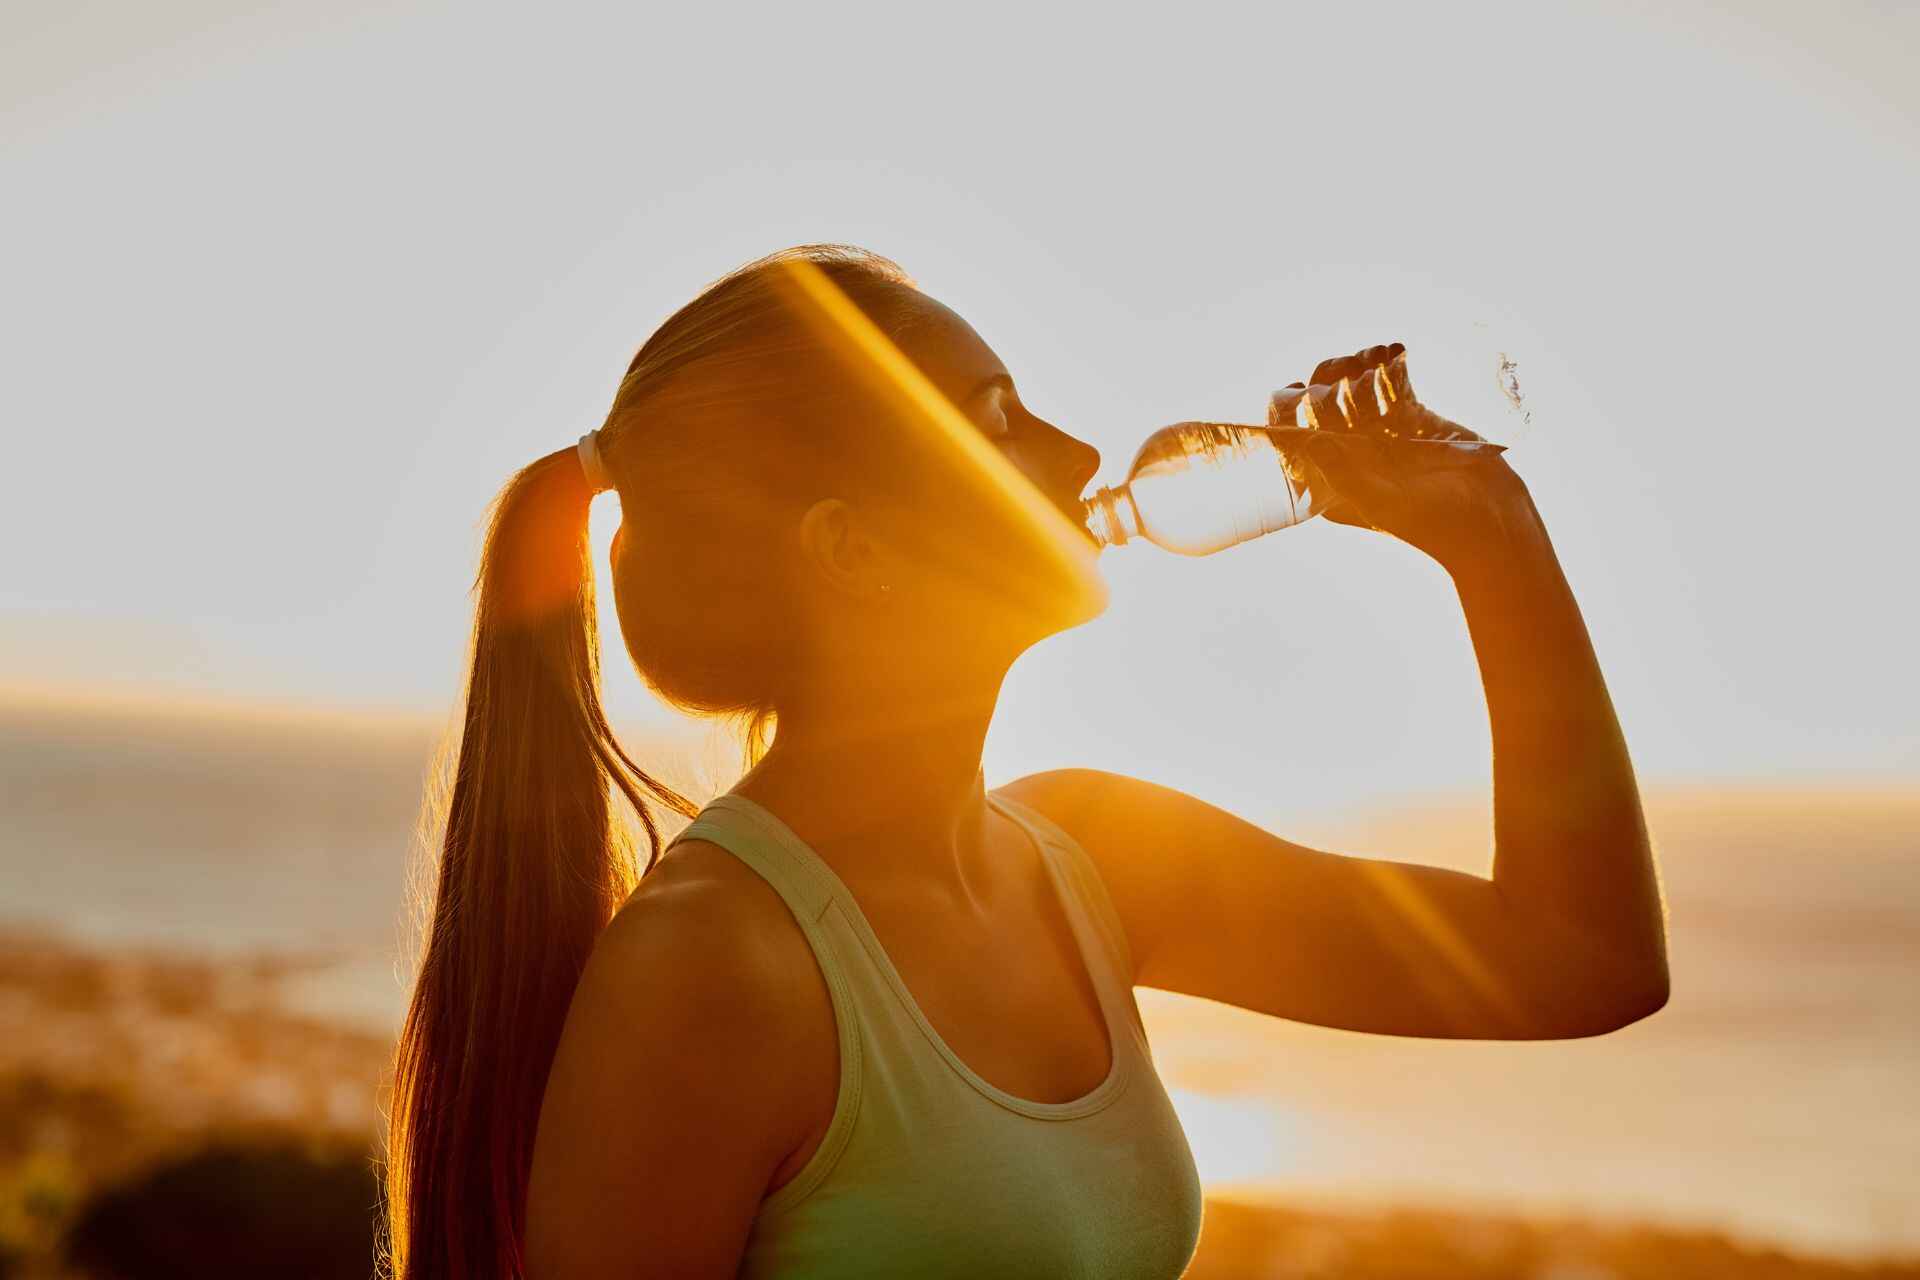 Idratazione: il ruolo dell'idratazione nel dimagrimento è realmente importante